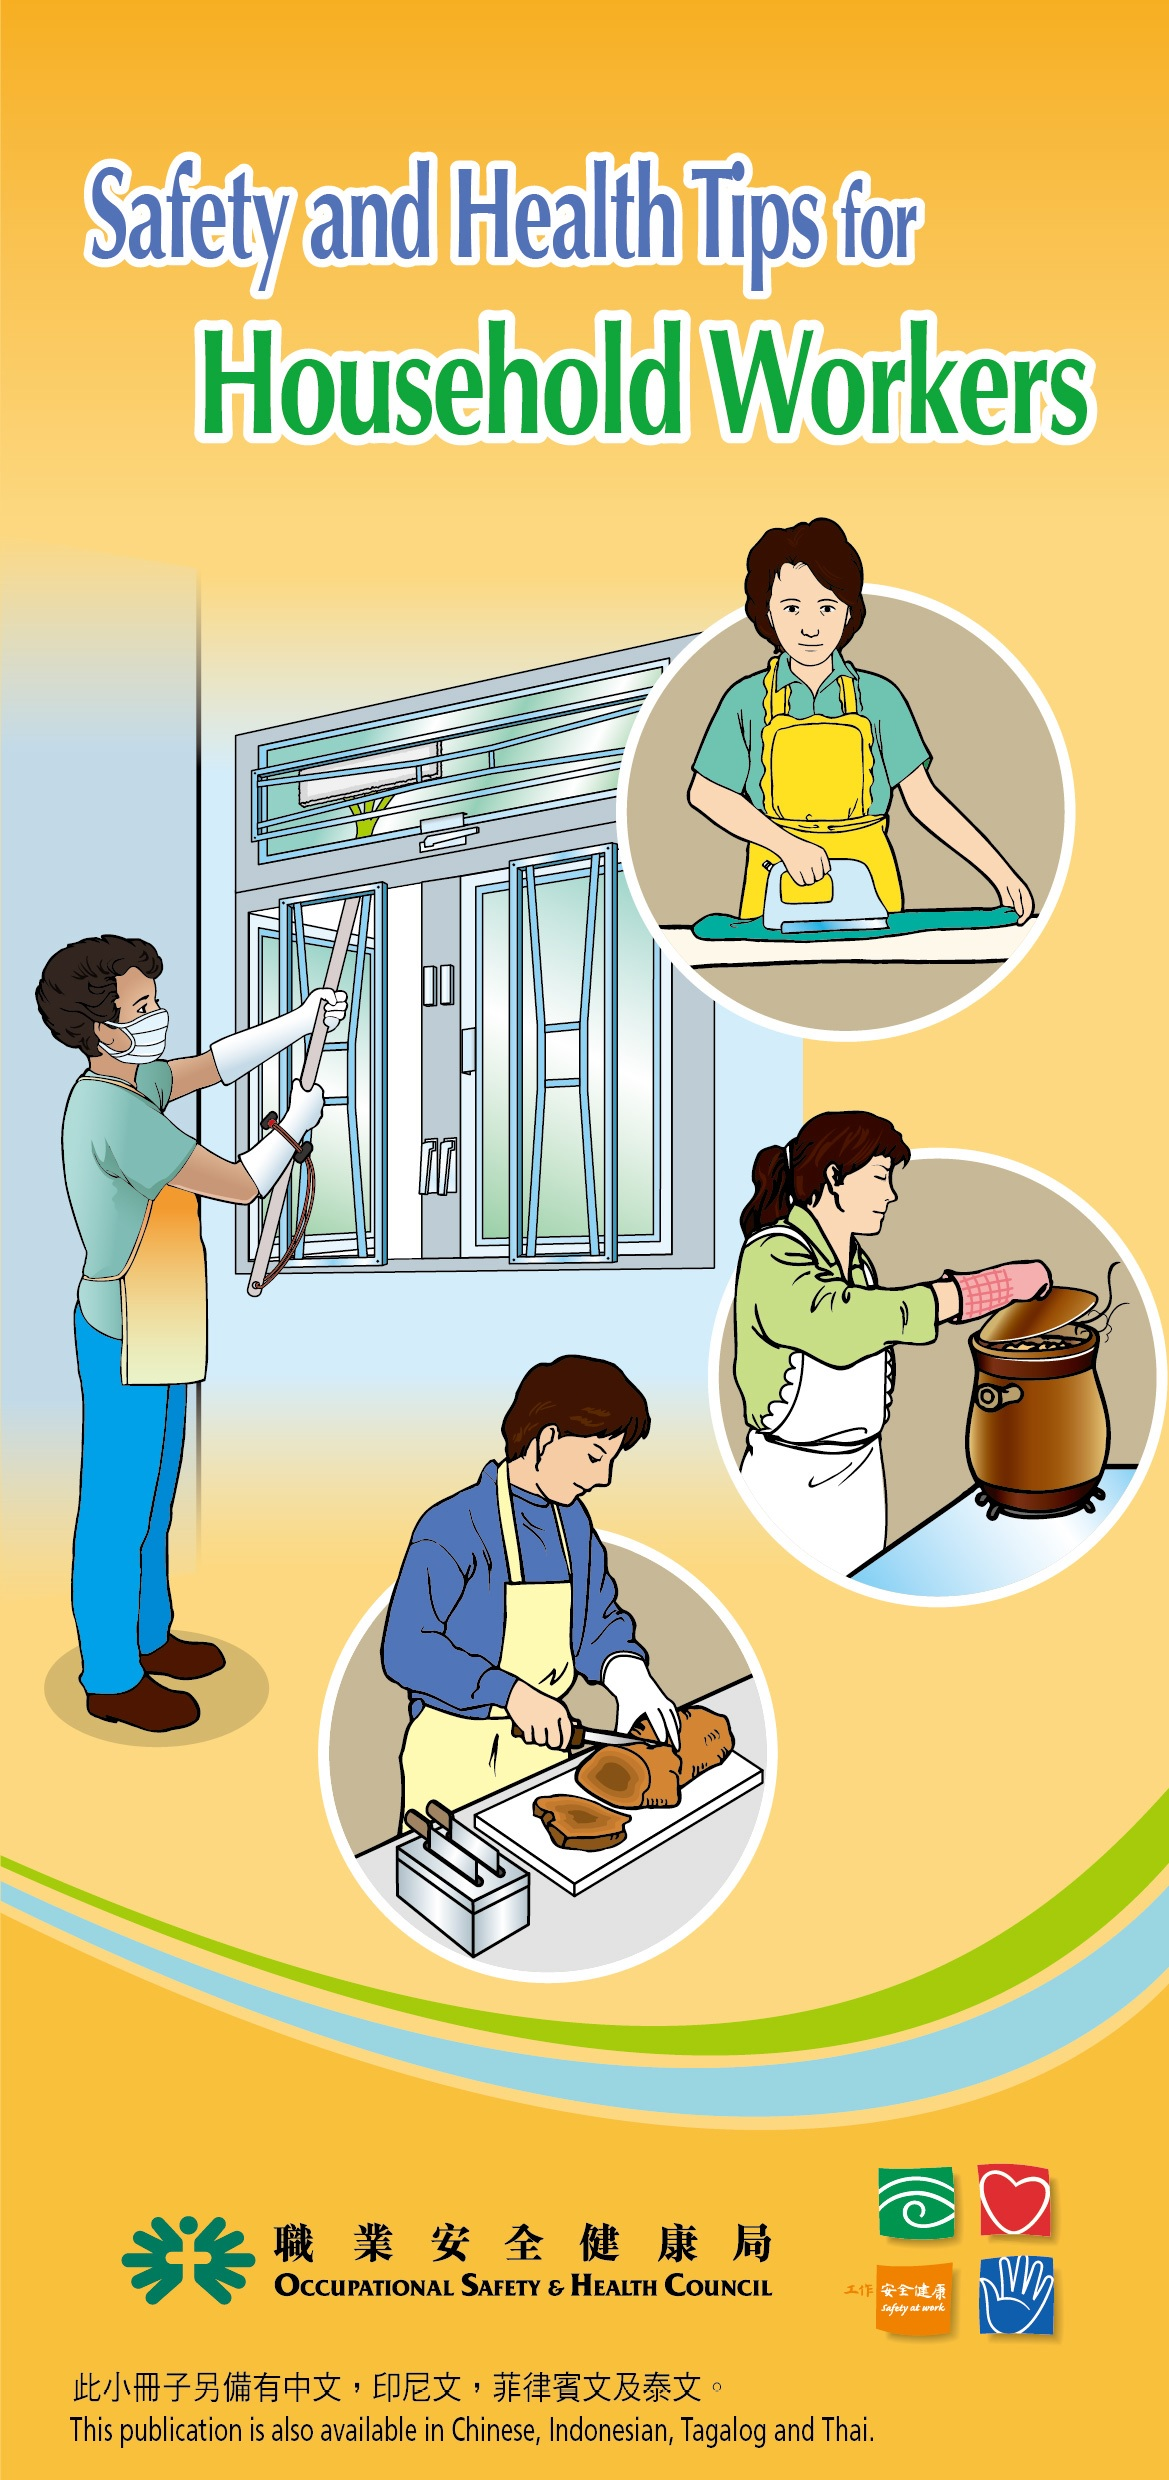 घरेलू कामगारों के लिए सुरक्षा और स्वास्थ्य संबंधी सुझाव